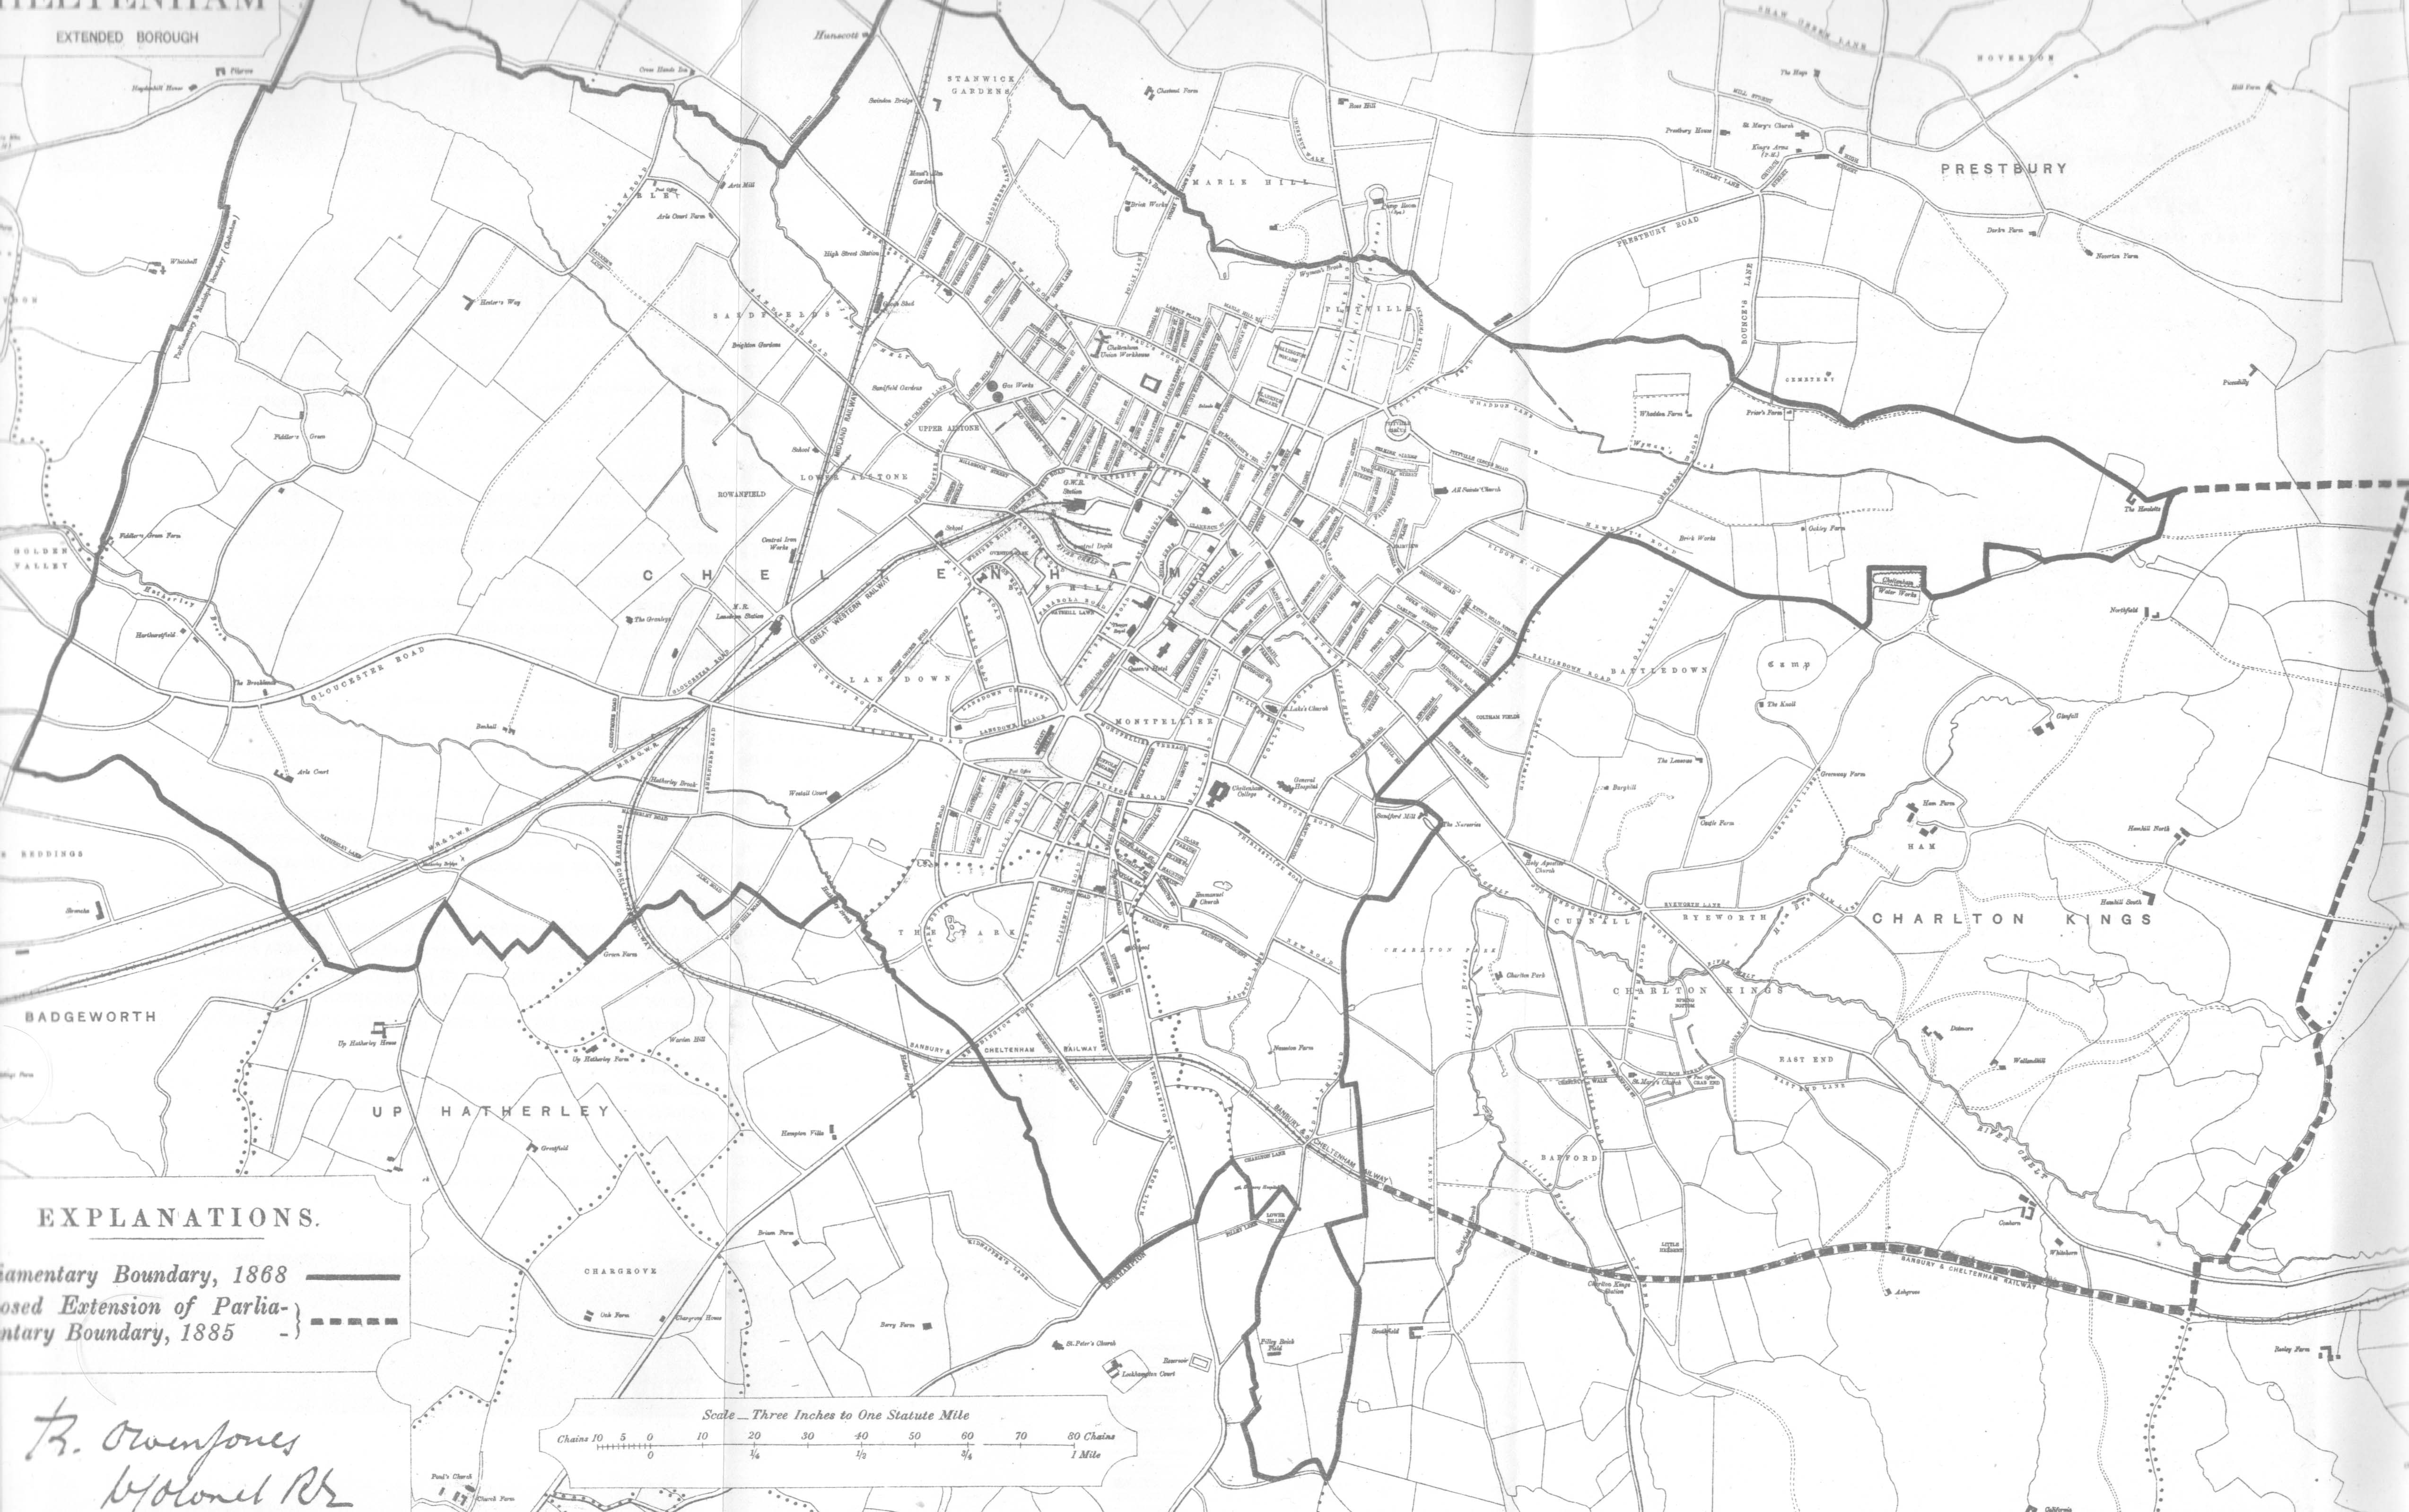 Map of Cheltenham